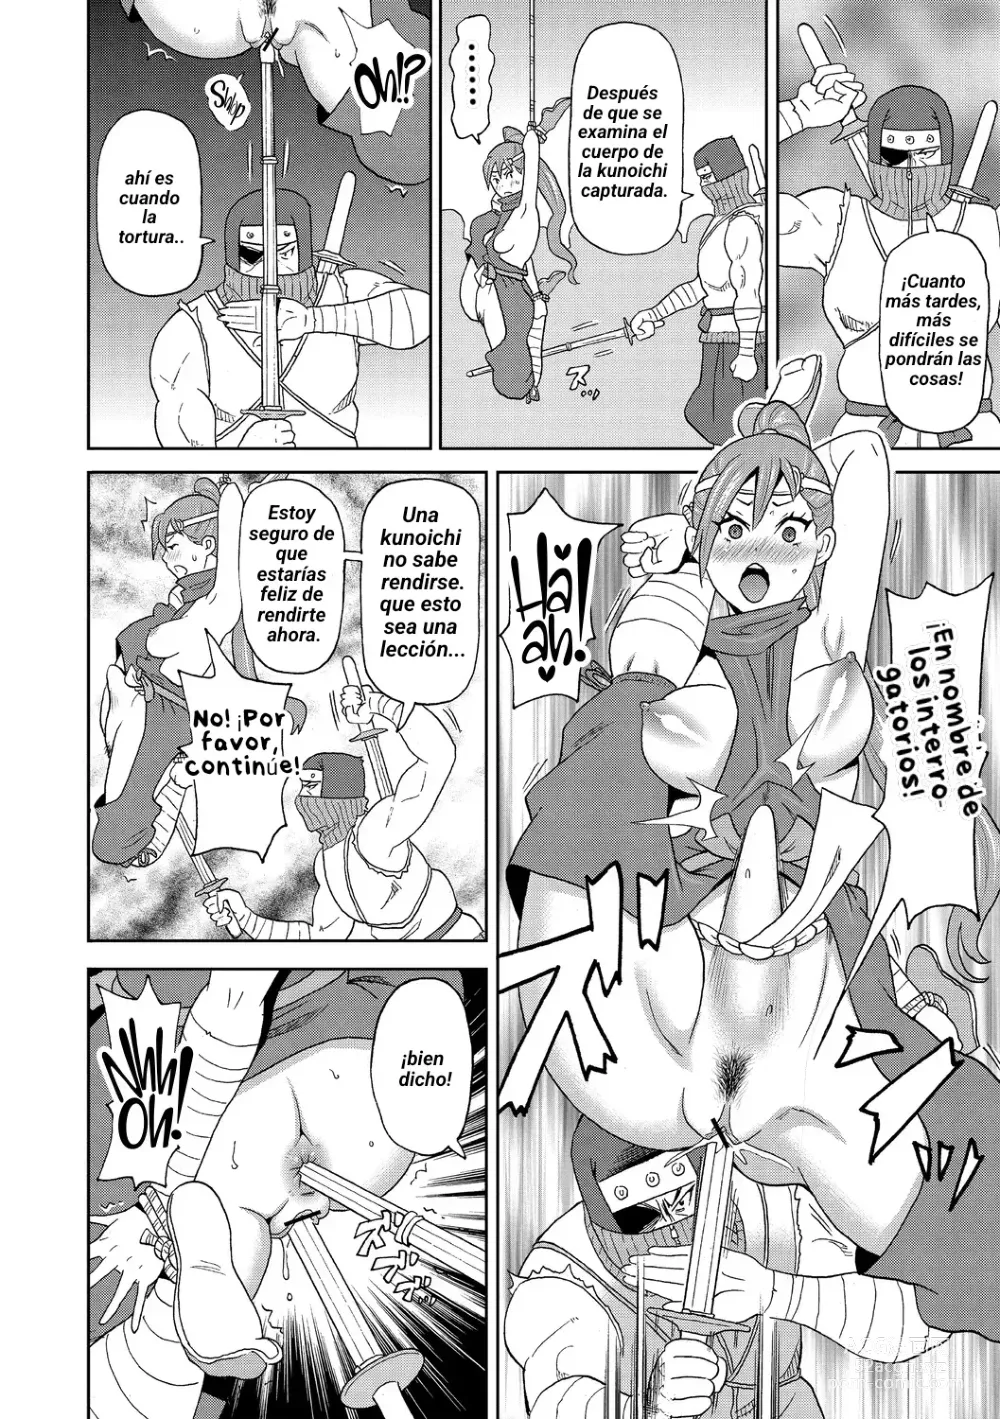 Page 10 of manga Shinmai Kunoichi Shinozaki-san.